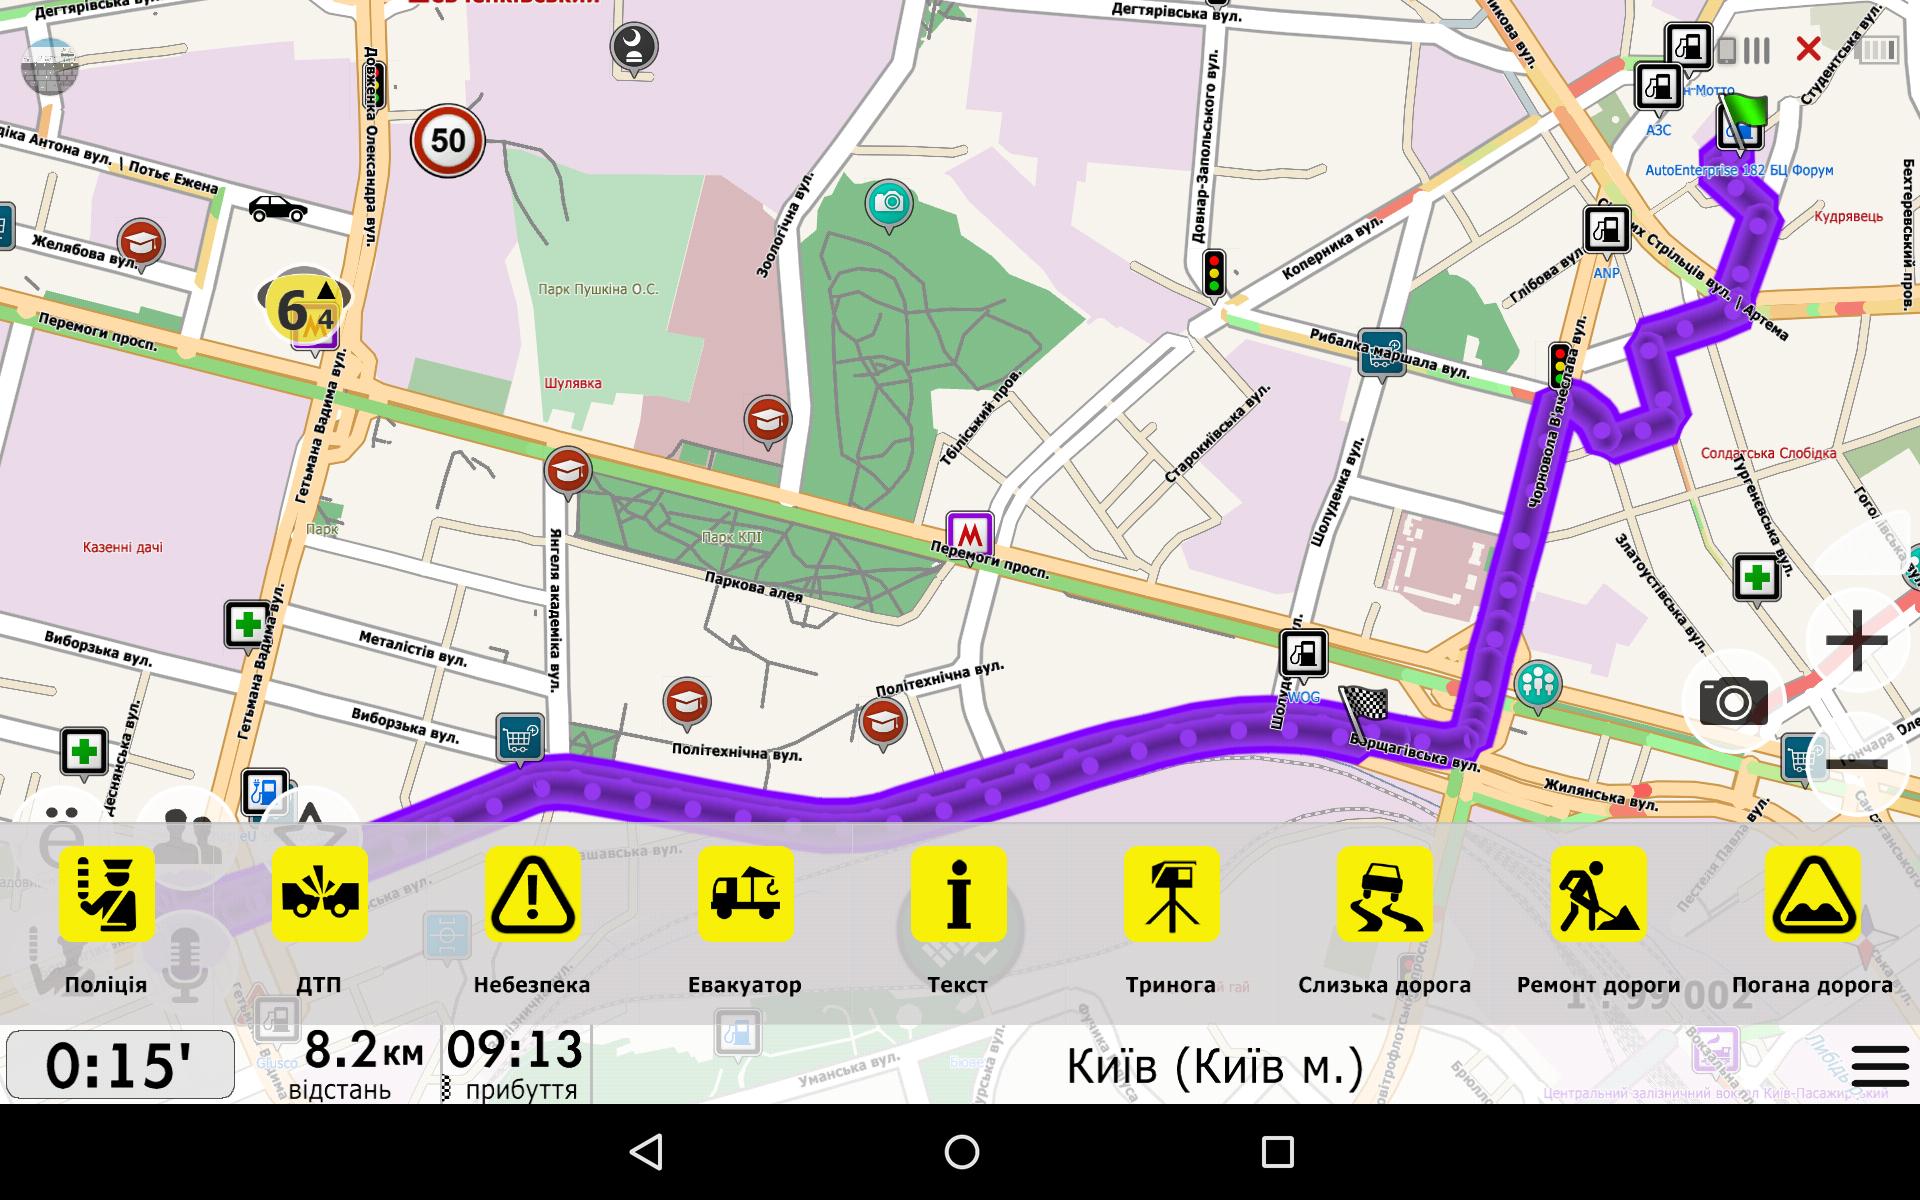 Нави-Мапс GPS навигатор Украина + Европа для Андроид - скачать APK